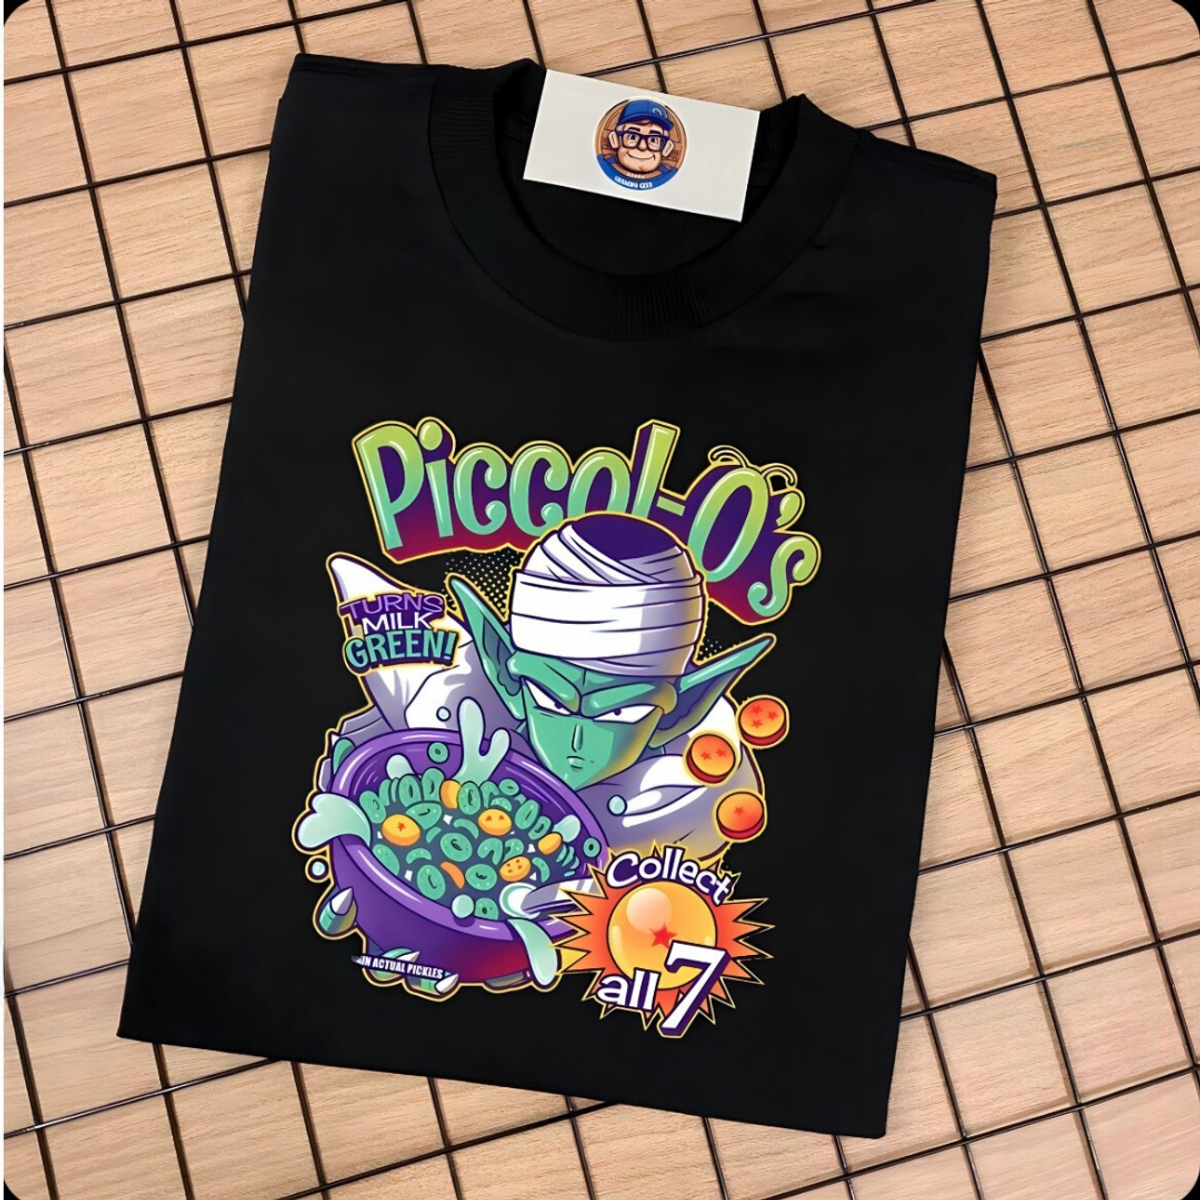 Nome do produto: Piccolo Crunch